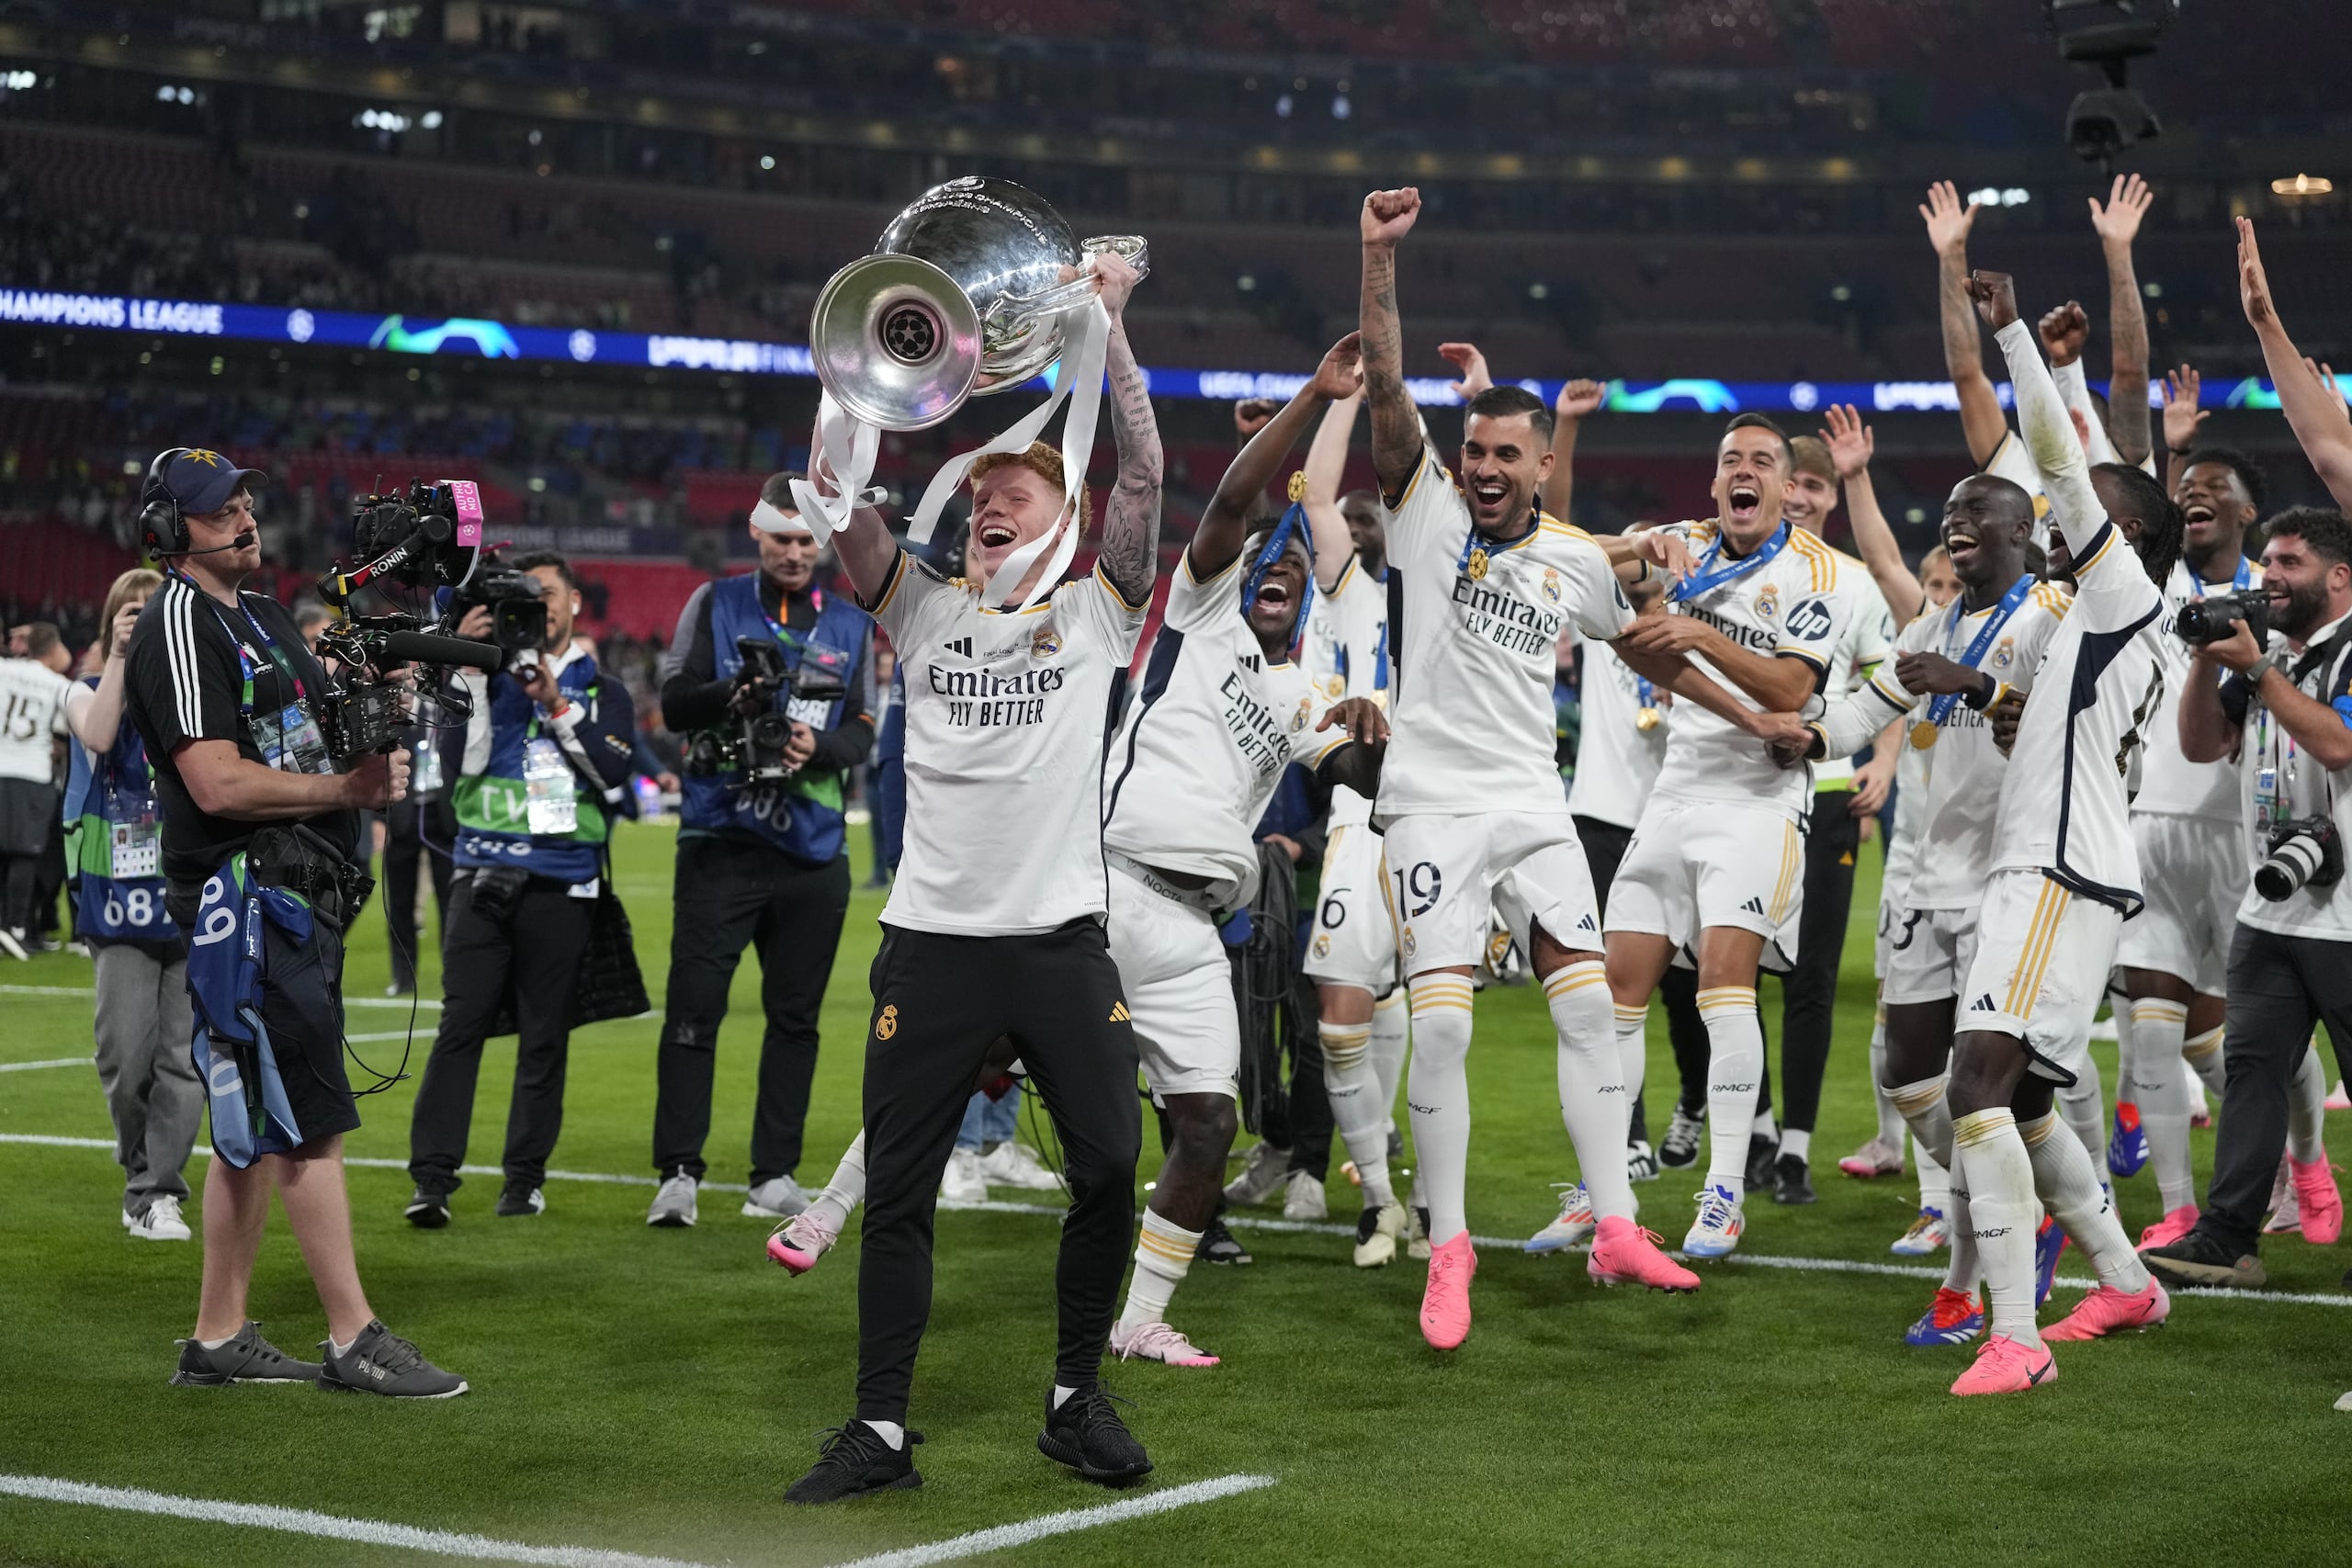 Jeremy de León celebra con la copa de la Liga de Campeones UEFA conquistada el sábado por el Real Madrid en el Wembley Stadium de Londres, Inglaterra.